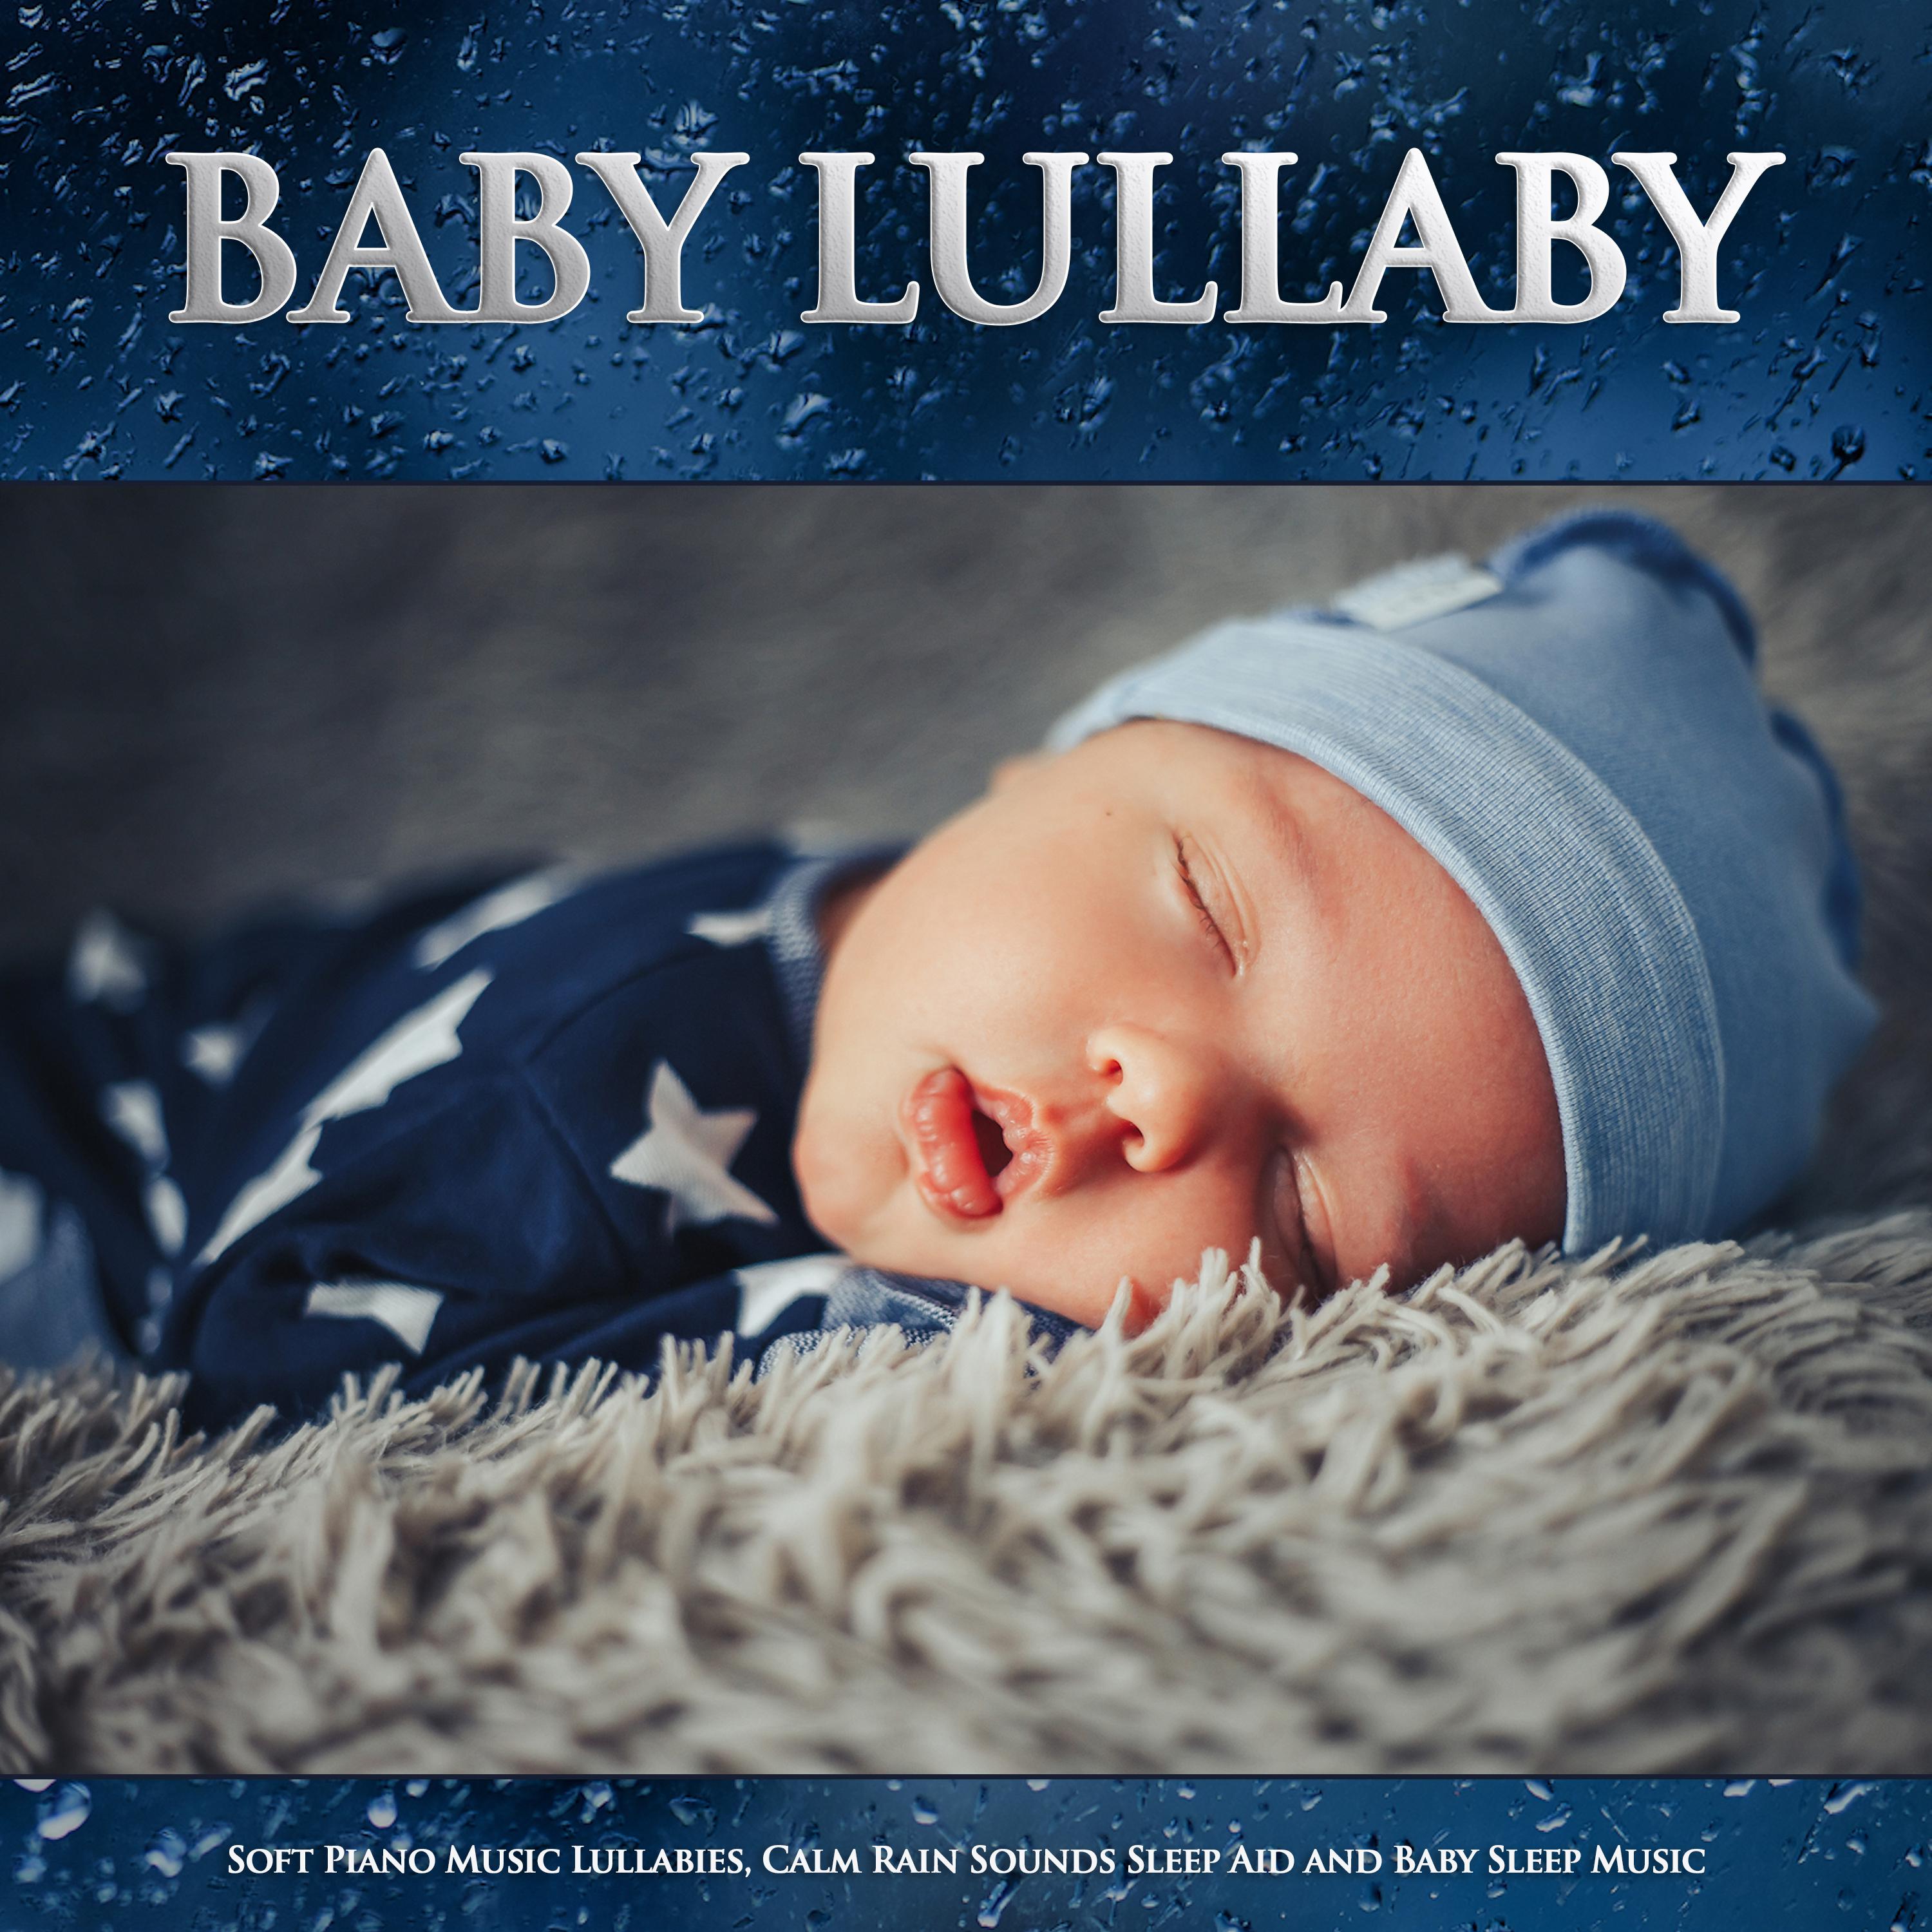 Baby Lullabies - Sleep Aid